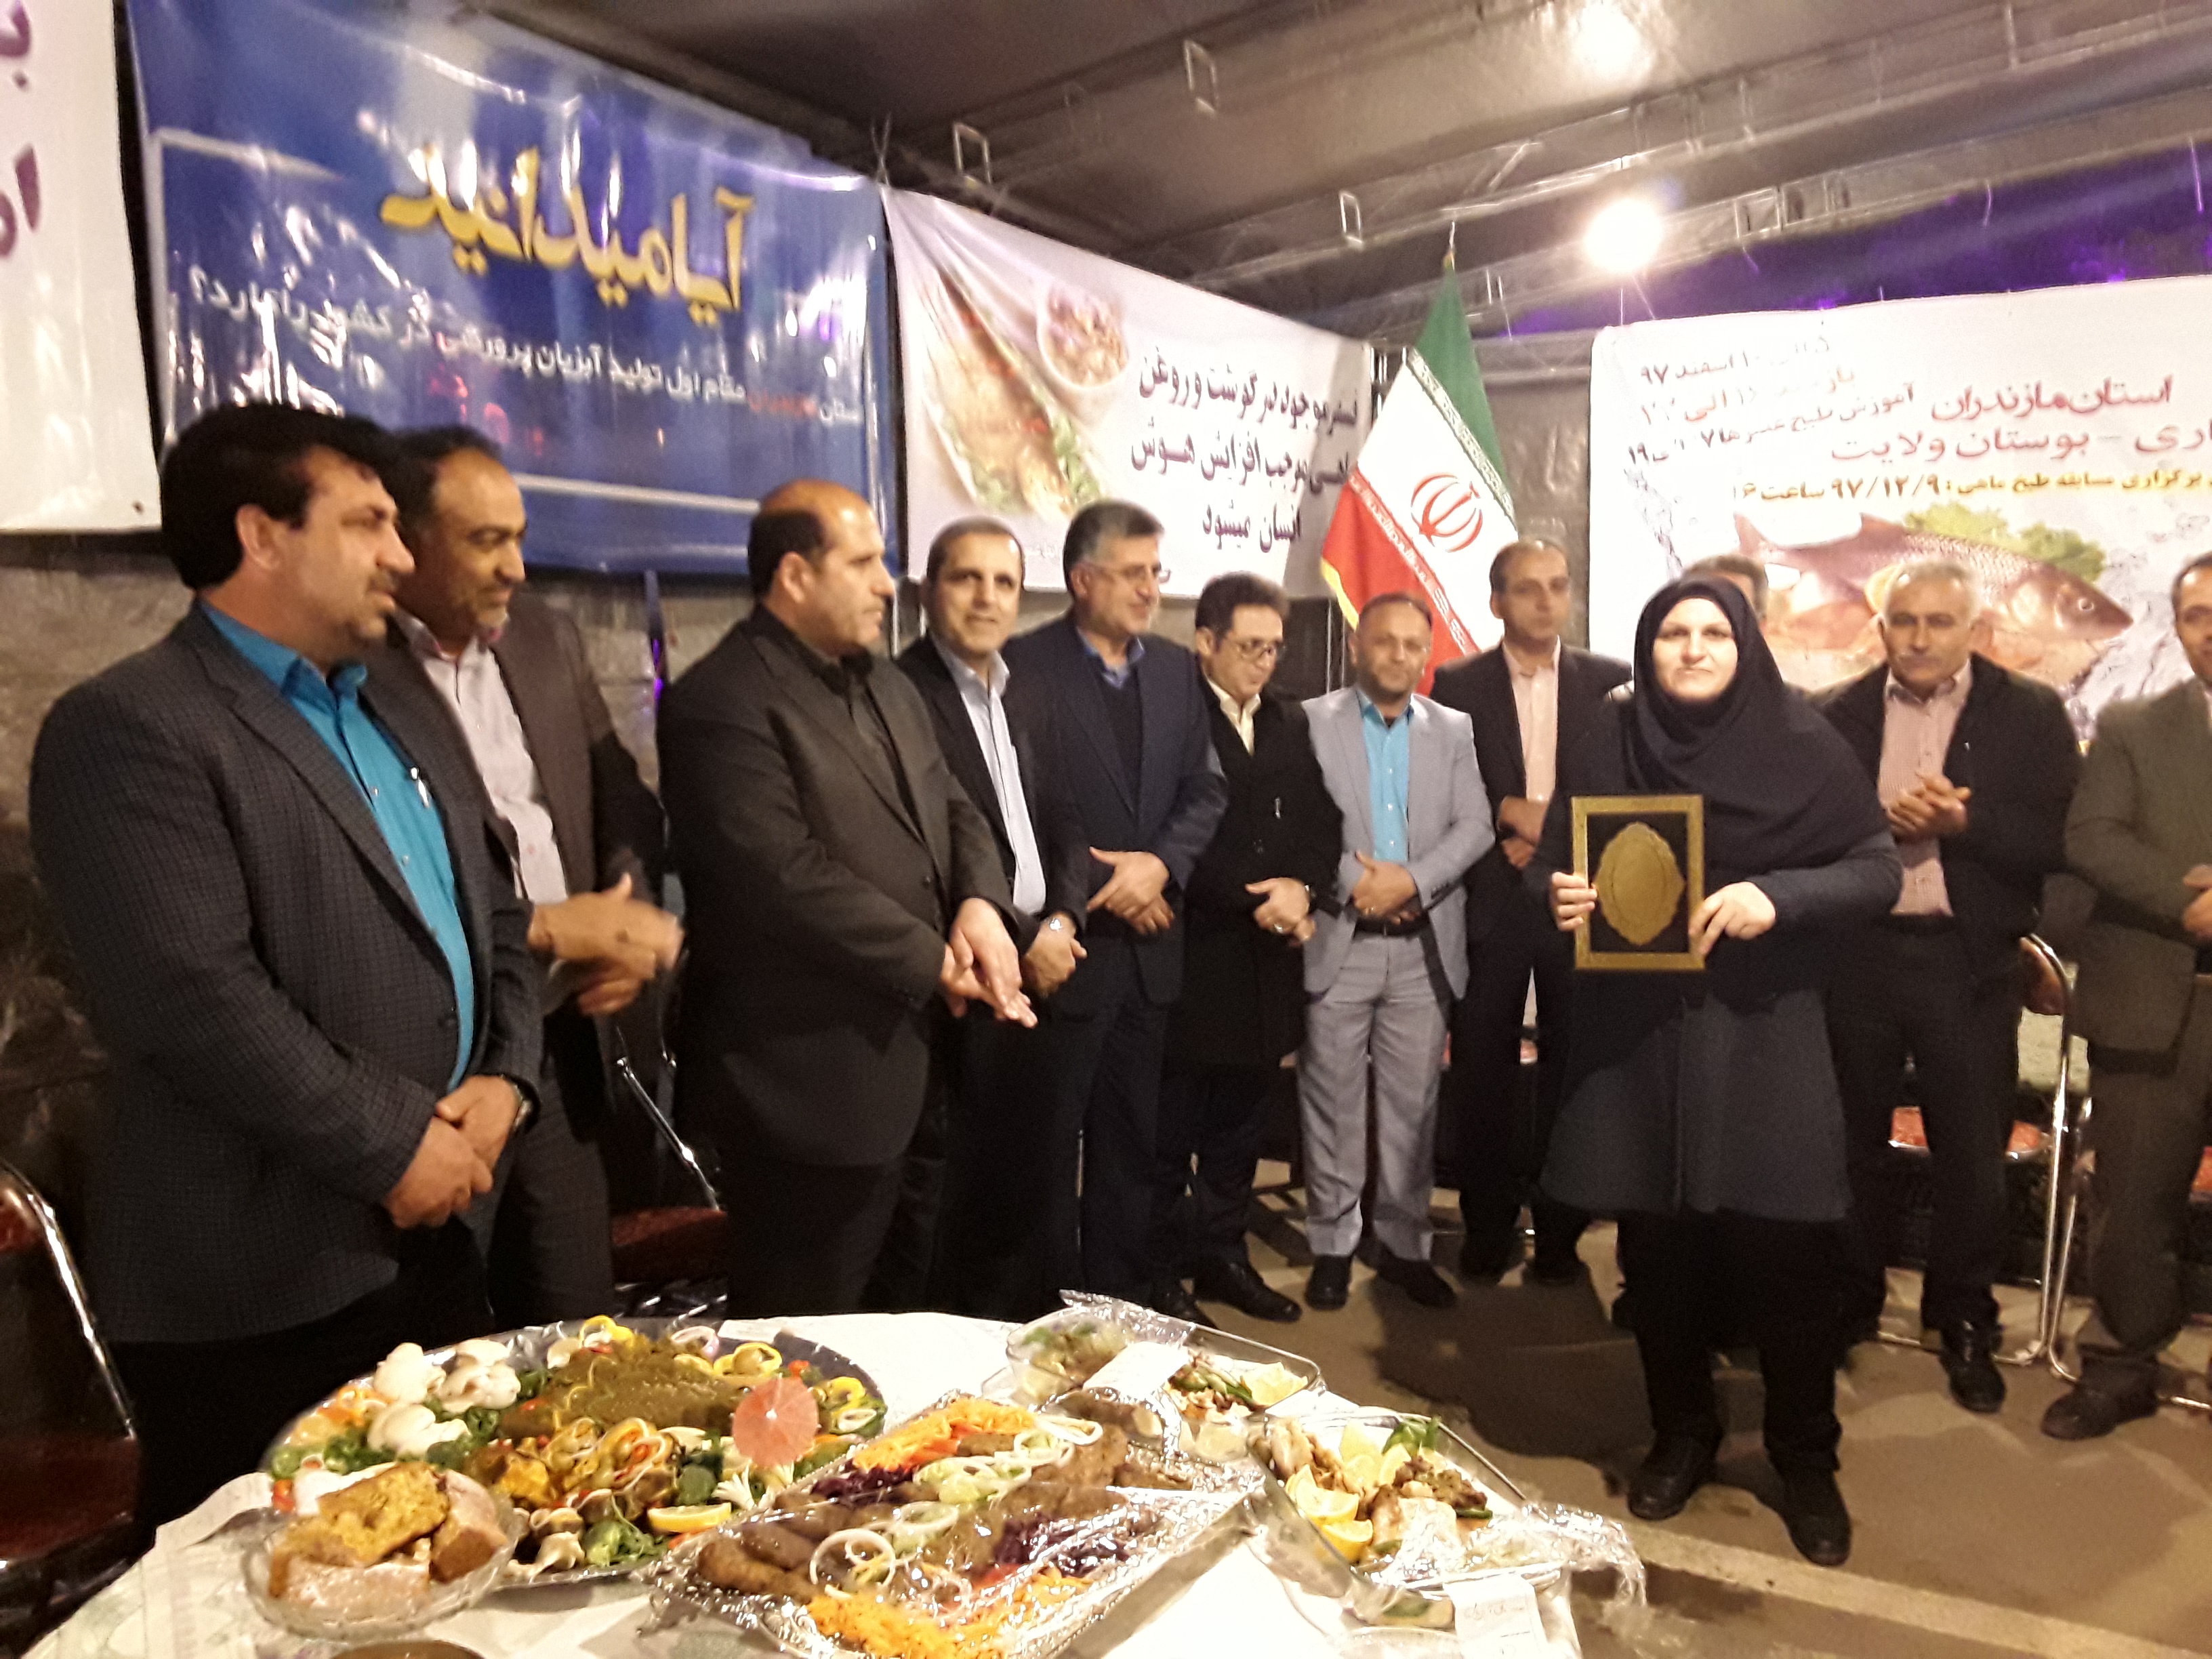  مسابقه طبخ آبزیان (ماهی) دربوستان ولایت شهرستان ساری با اراﺋه 56 نوع  غذا شب پنجشنبه برگزارشد